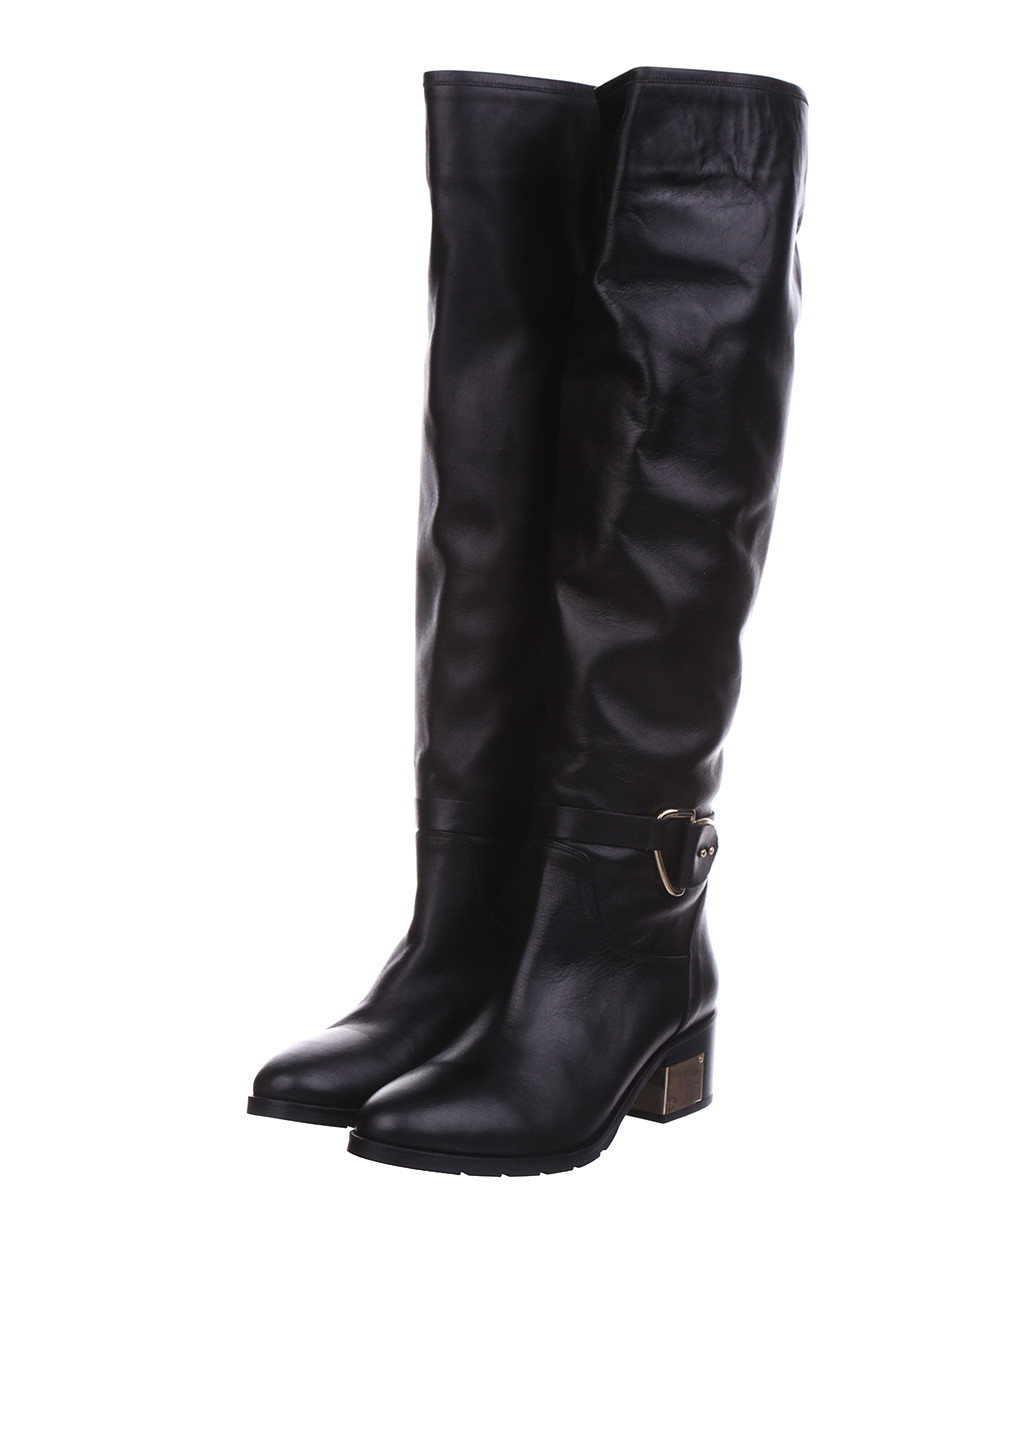 Черные осенние ботфорты Lottini на среднем каблуке с пряжкой